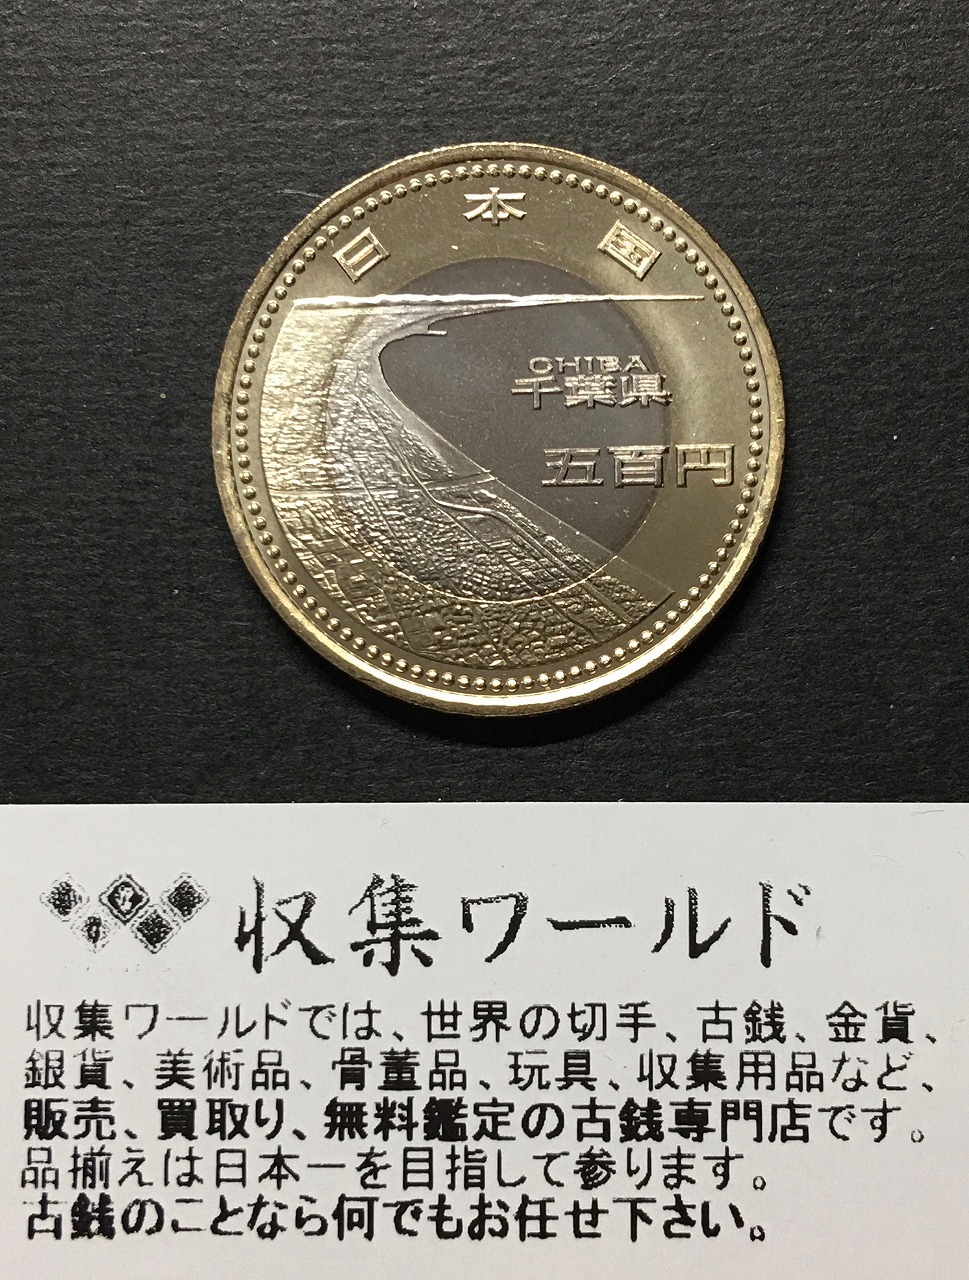 500円バイカラークラッド貨 地方自治法施行60周年記念貨幣 神奈川県